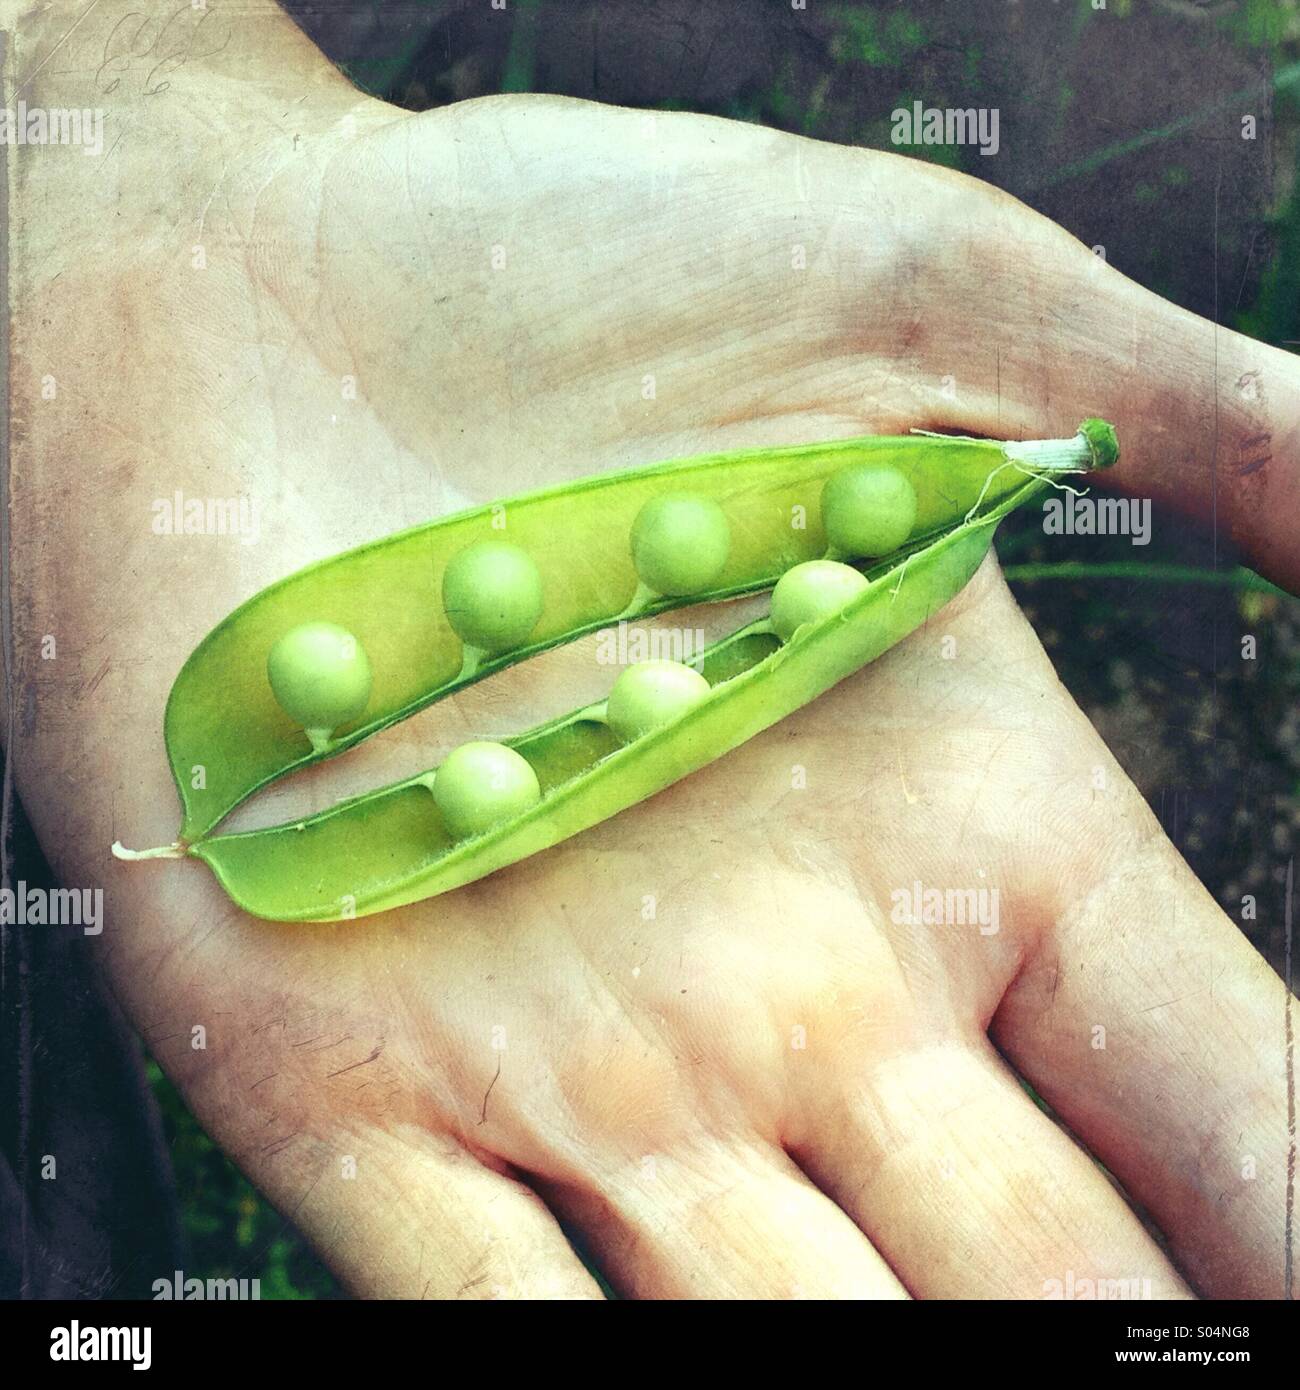 Zarte Frauenhand hält eine grüne Erbse Schote (Pisum Sativum), öffnen, um Erbsen zeigen. Stockfoto